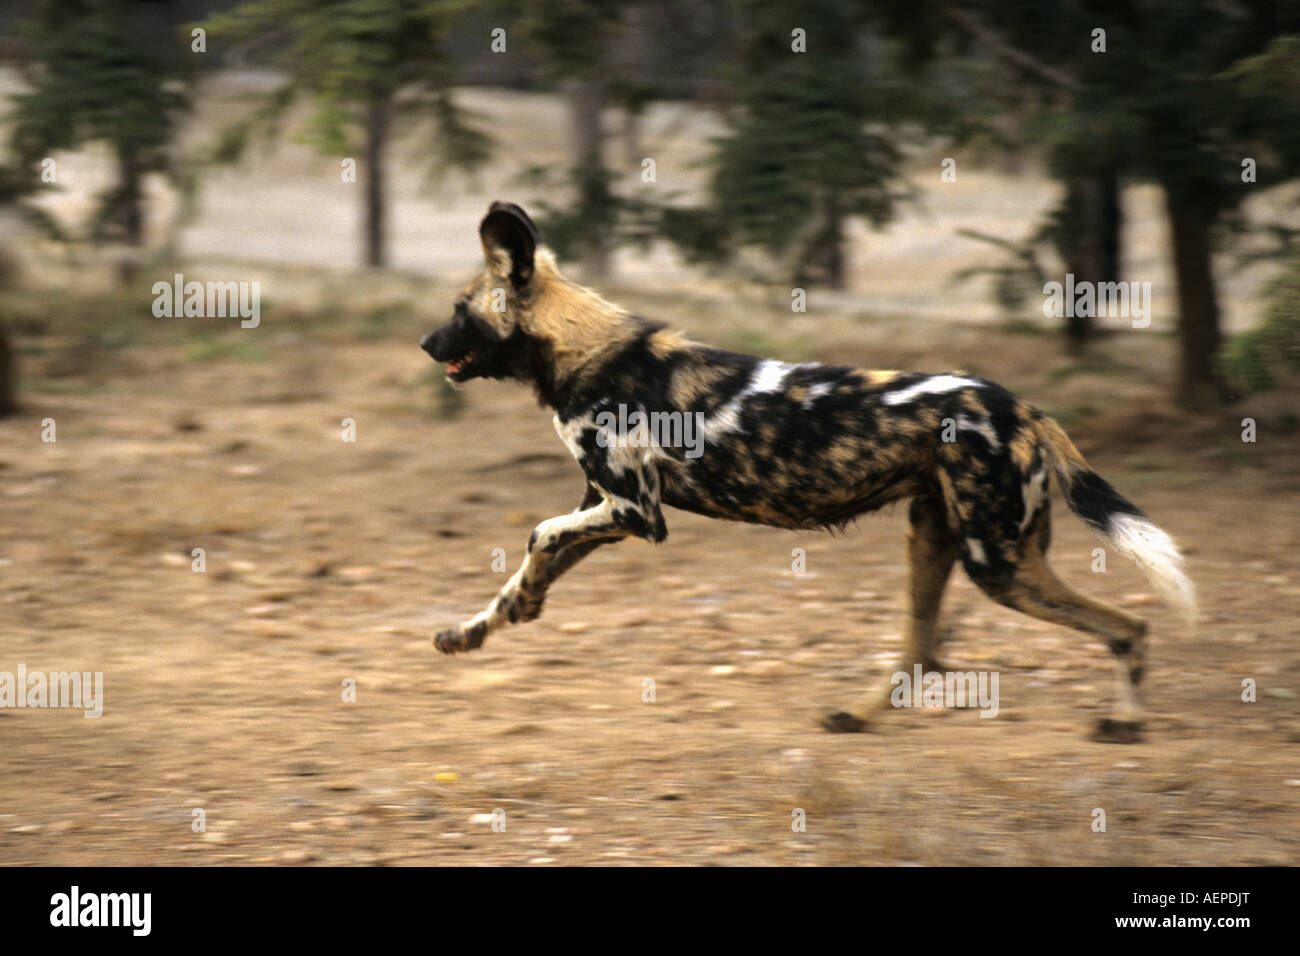 Zimbabwe Bulawayo, Painted hunting dog running Stock Photo